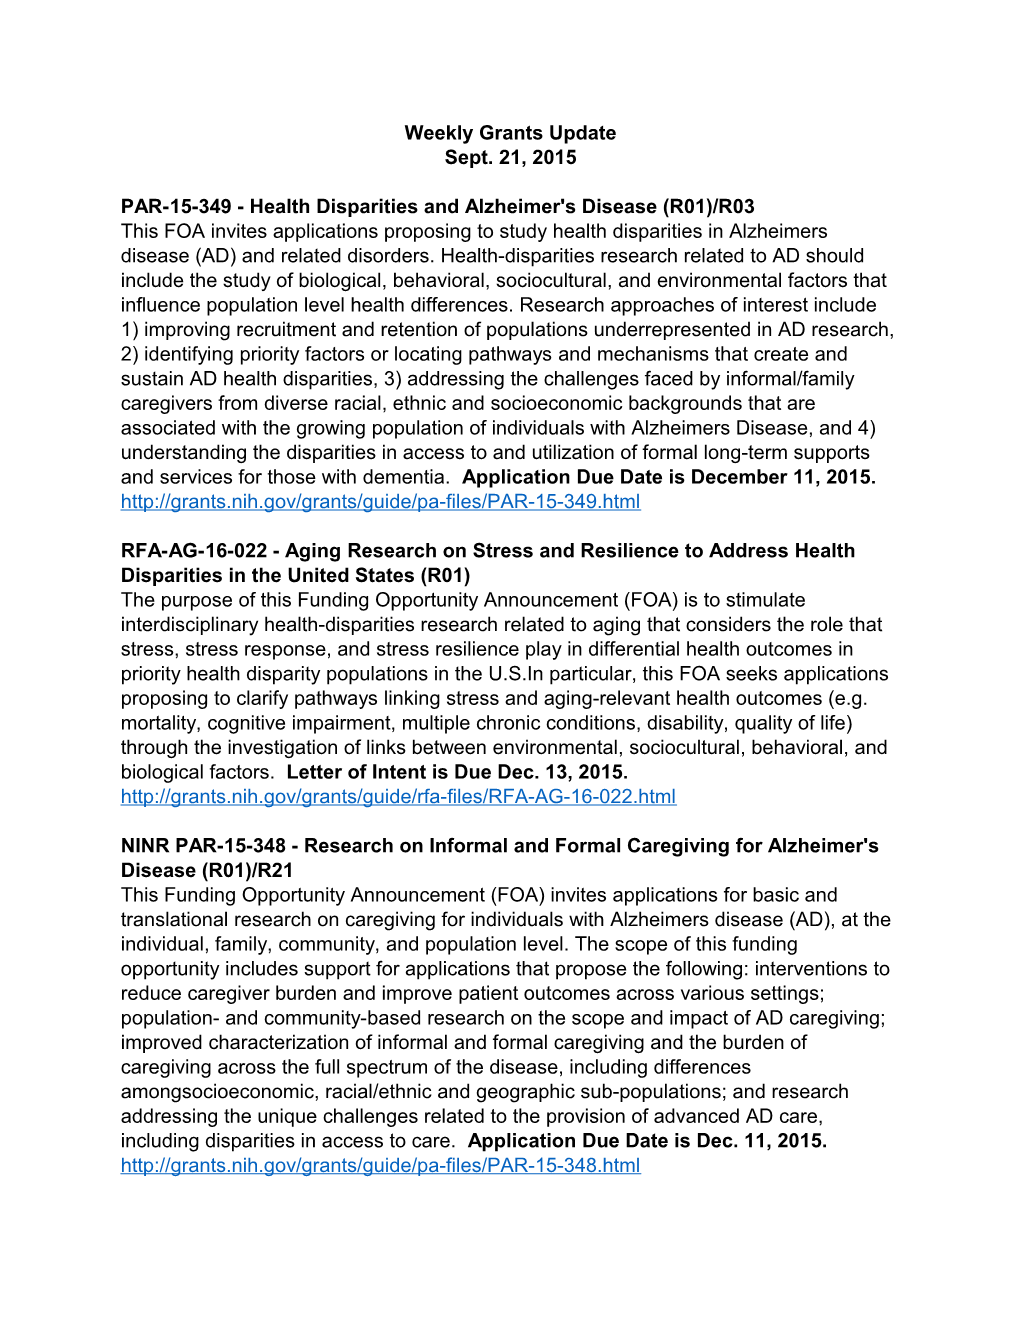 PAR-15-349 - Health Disparities and Alzheimer's Disease (R01)/R03